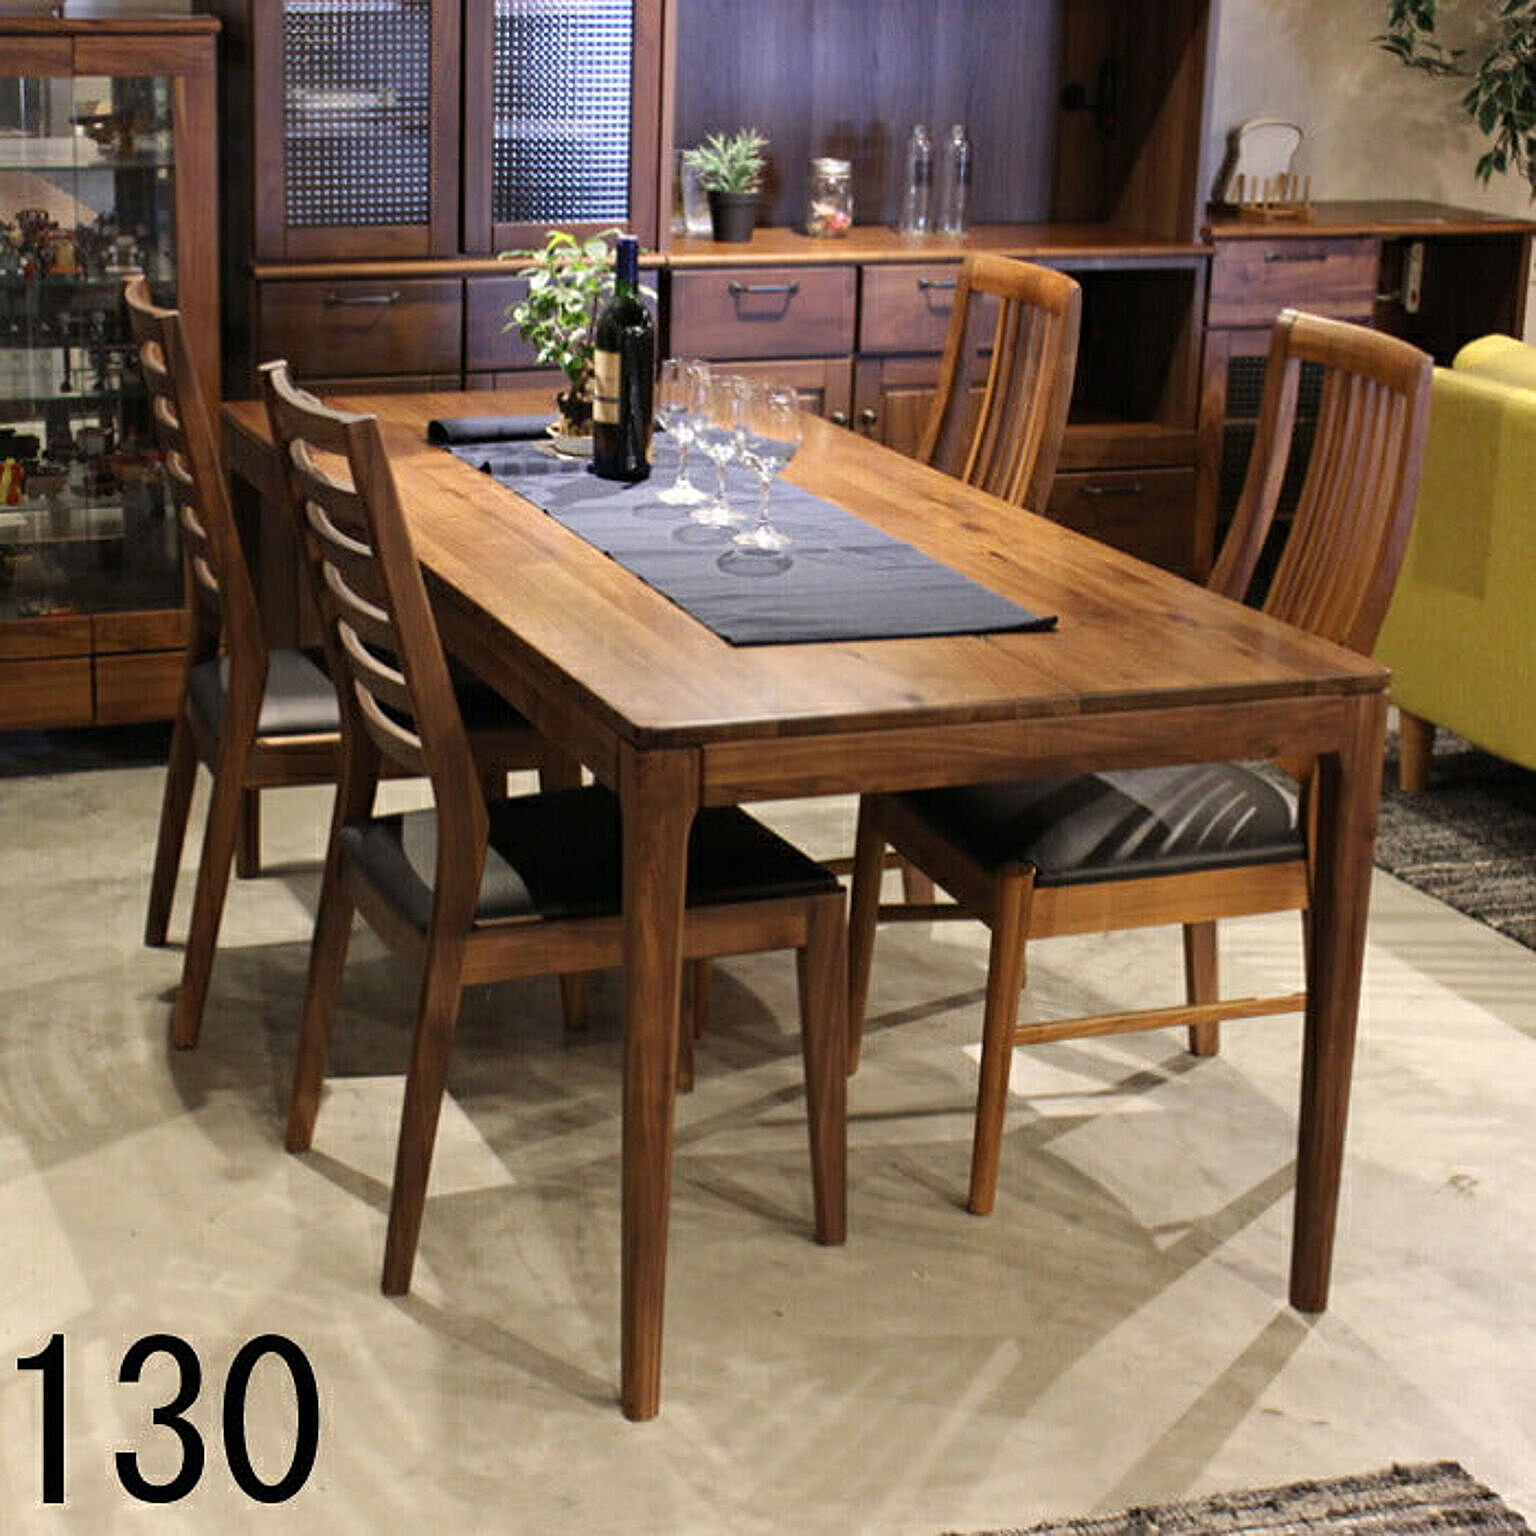 テーブル 机 おしゃれ 木製 130 ダイニングテーブル 無垢材 ウォールナット オーク 木 ラグジュアリー モダン シンプル おしゃれ カフェ風 送料無料 130cm